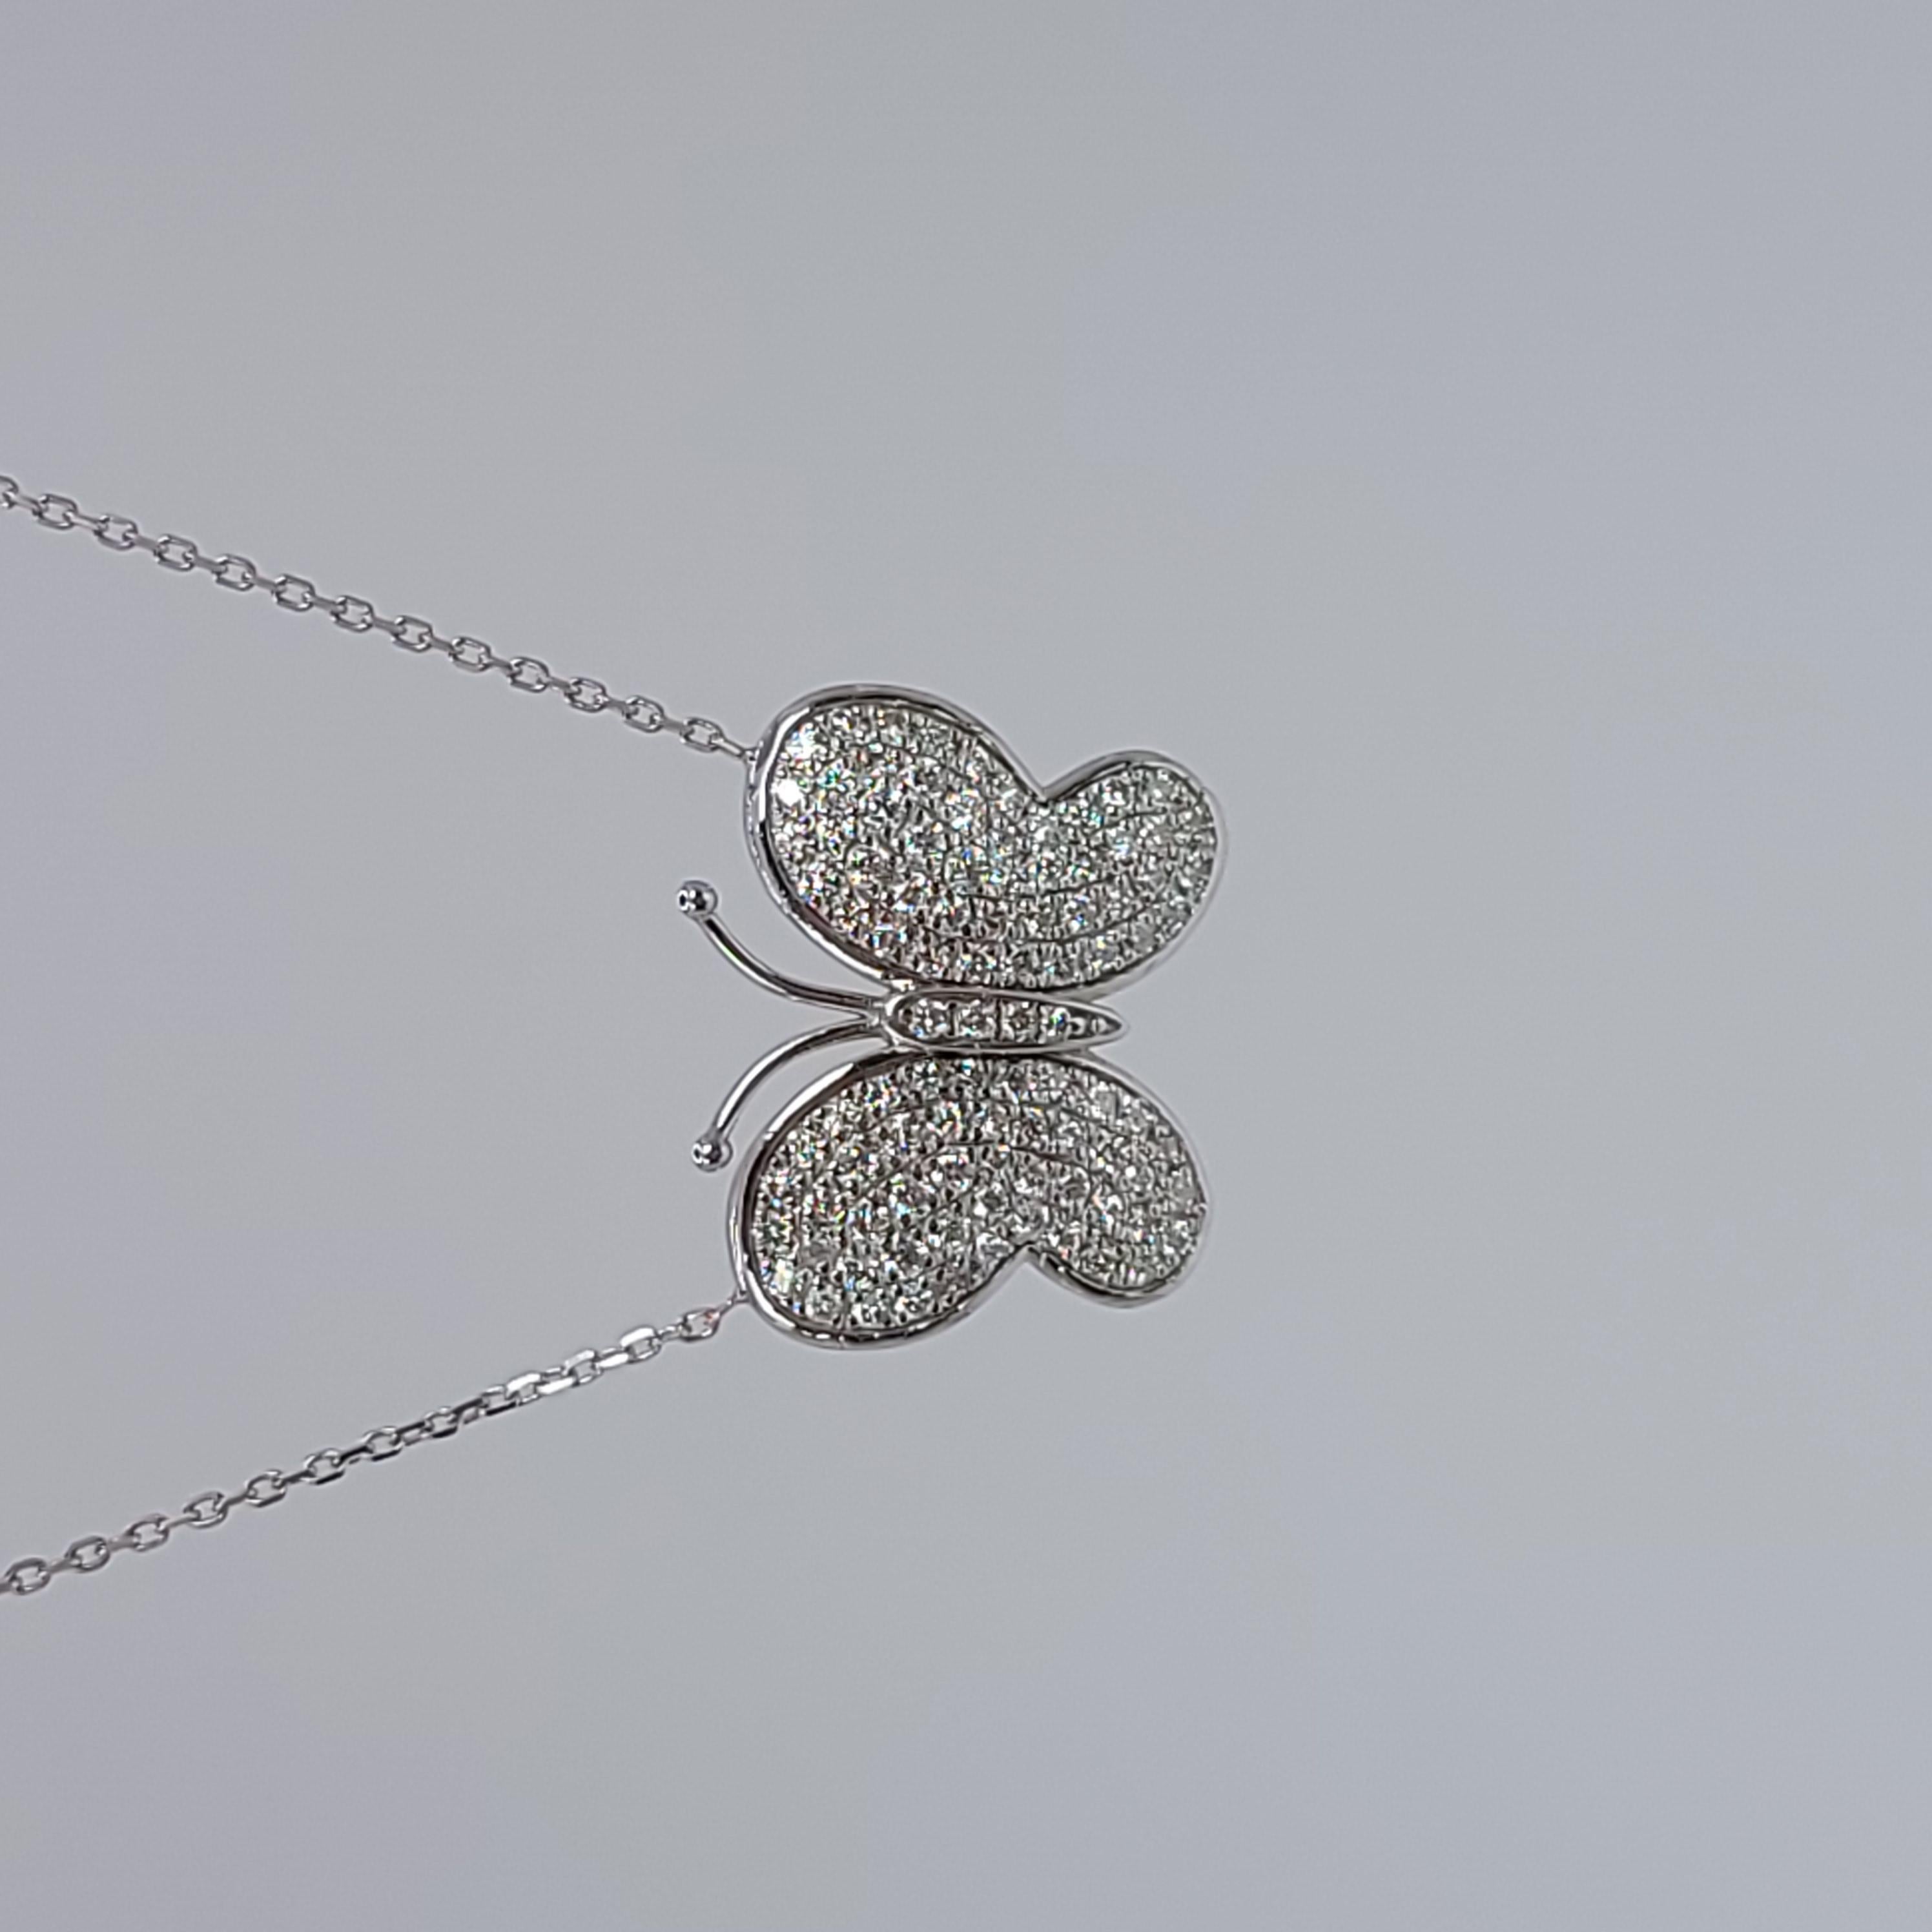 Collier papillon avec diamants naturels en or blanc 14KT composé de 1ct de diamants.

POIDS EN GRAMME : 4.47gr
OR : or blanc 14KT
Chaîne de collier - 18